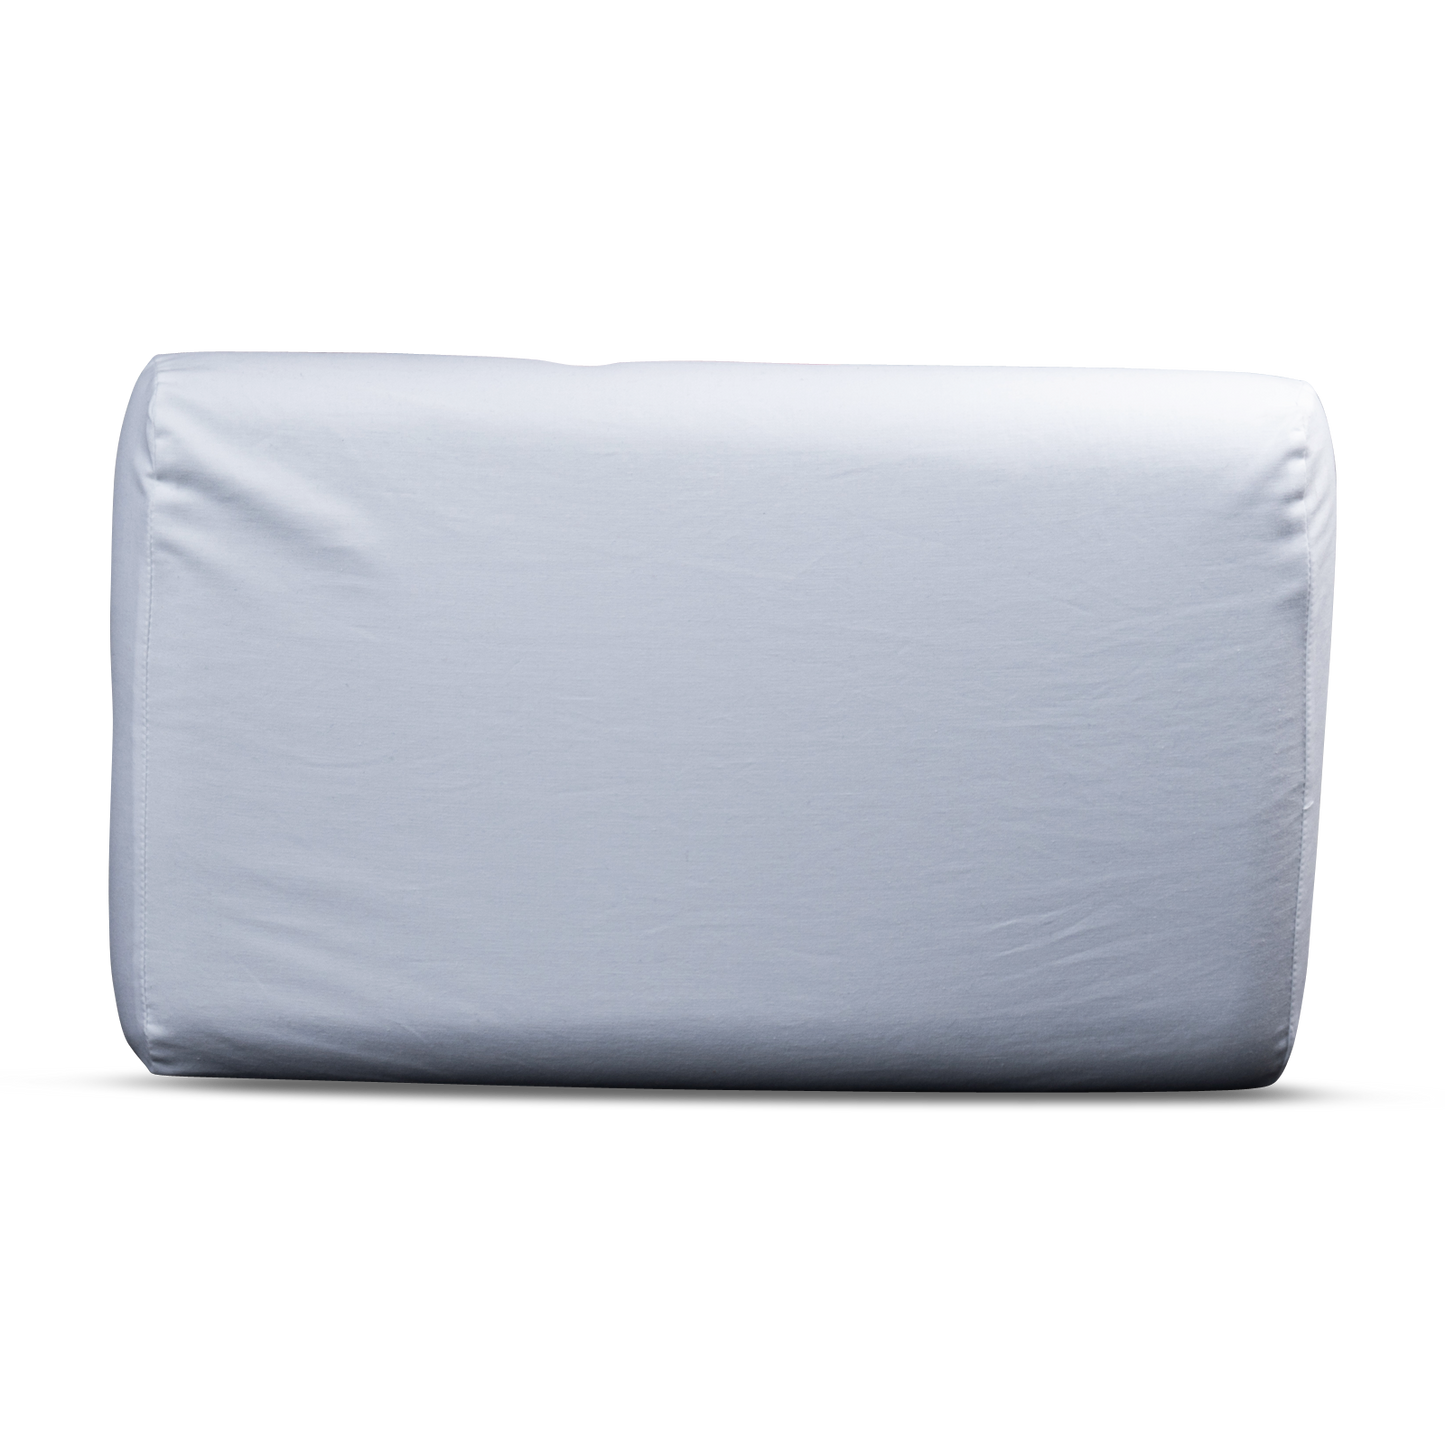 SleepWell Pillow - Contoured Copper Gel Memory Foam Pillow